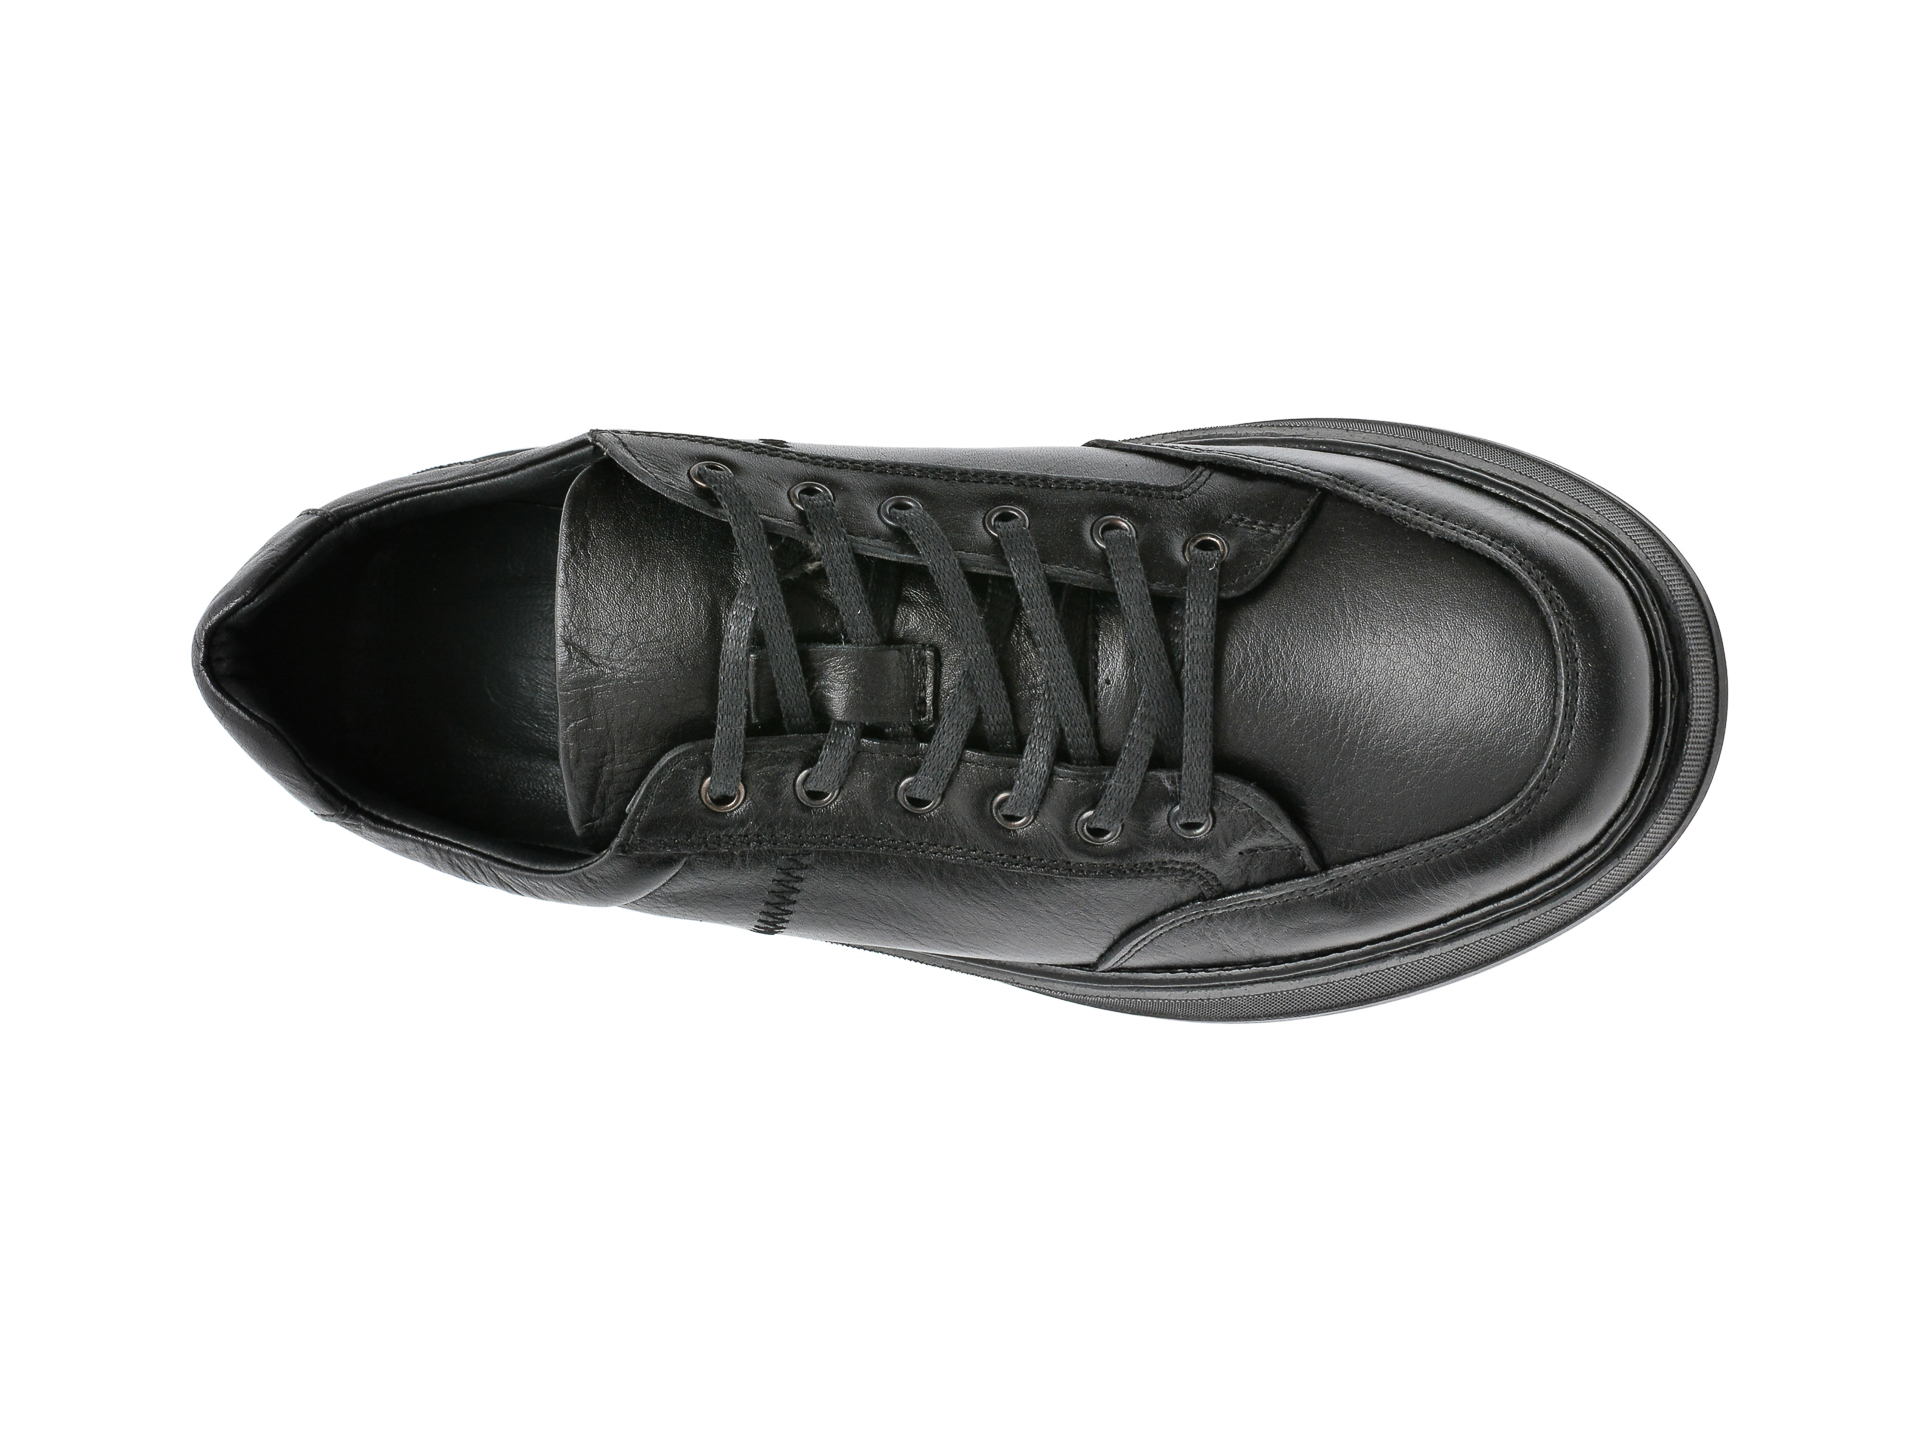 tempo obvious Desolate Pantofi OTTER negri, 17414, din piele naturala